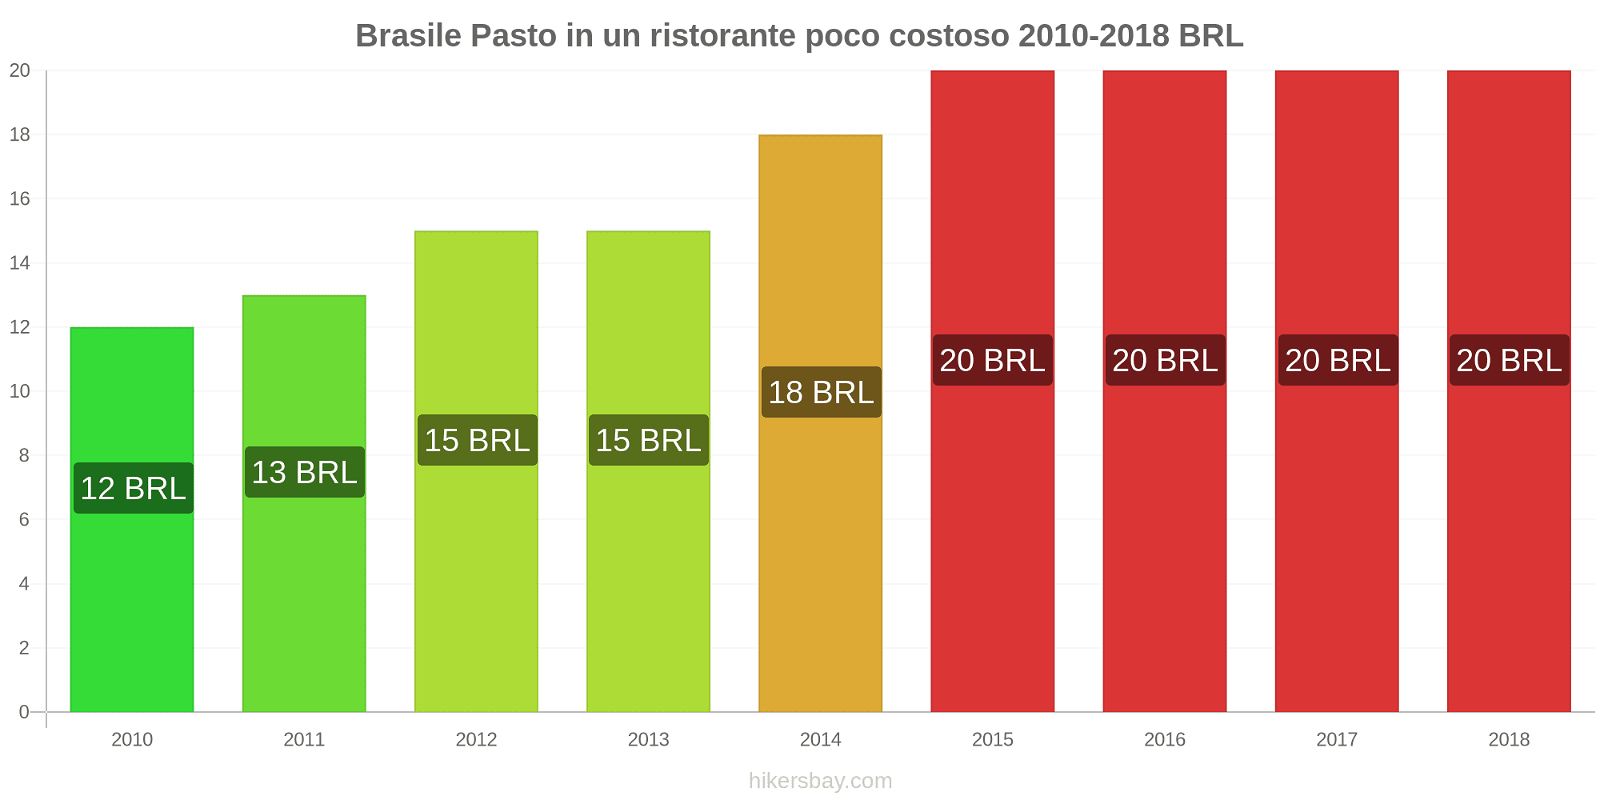 Brasile cambi di prezzo Pasto in un ristorante economico hikersbay.com